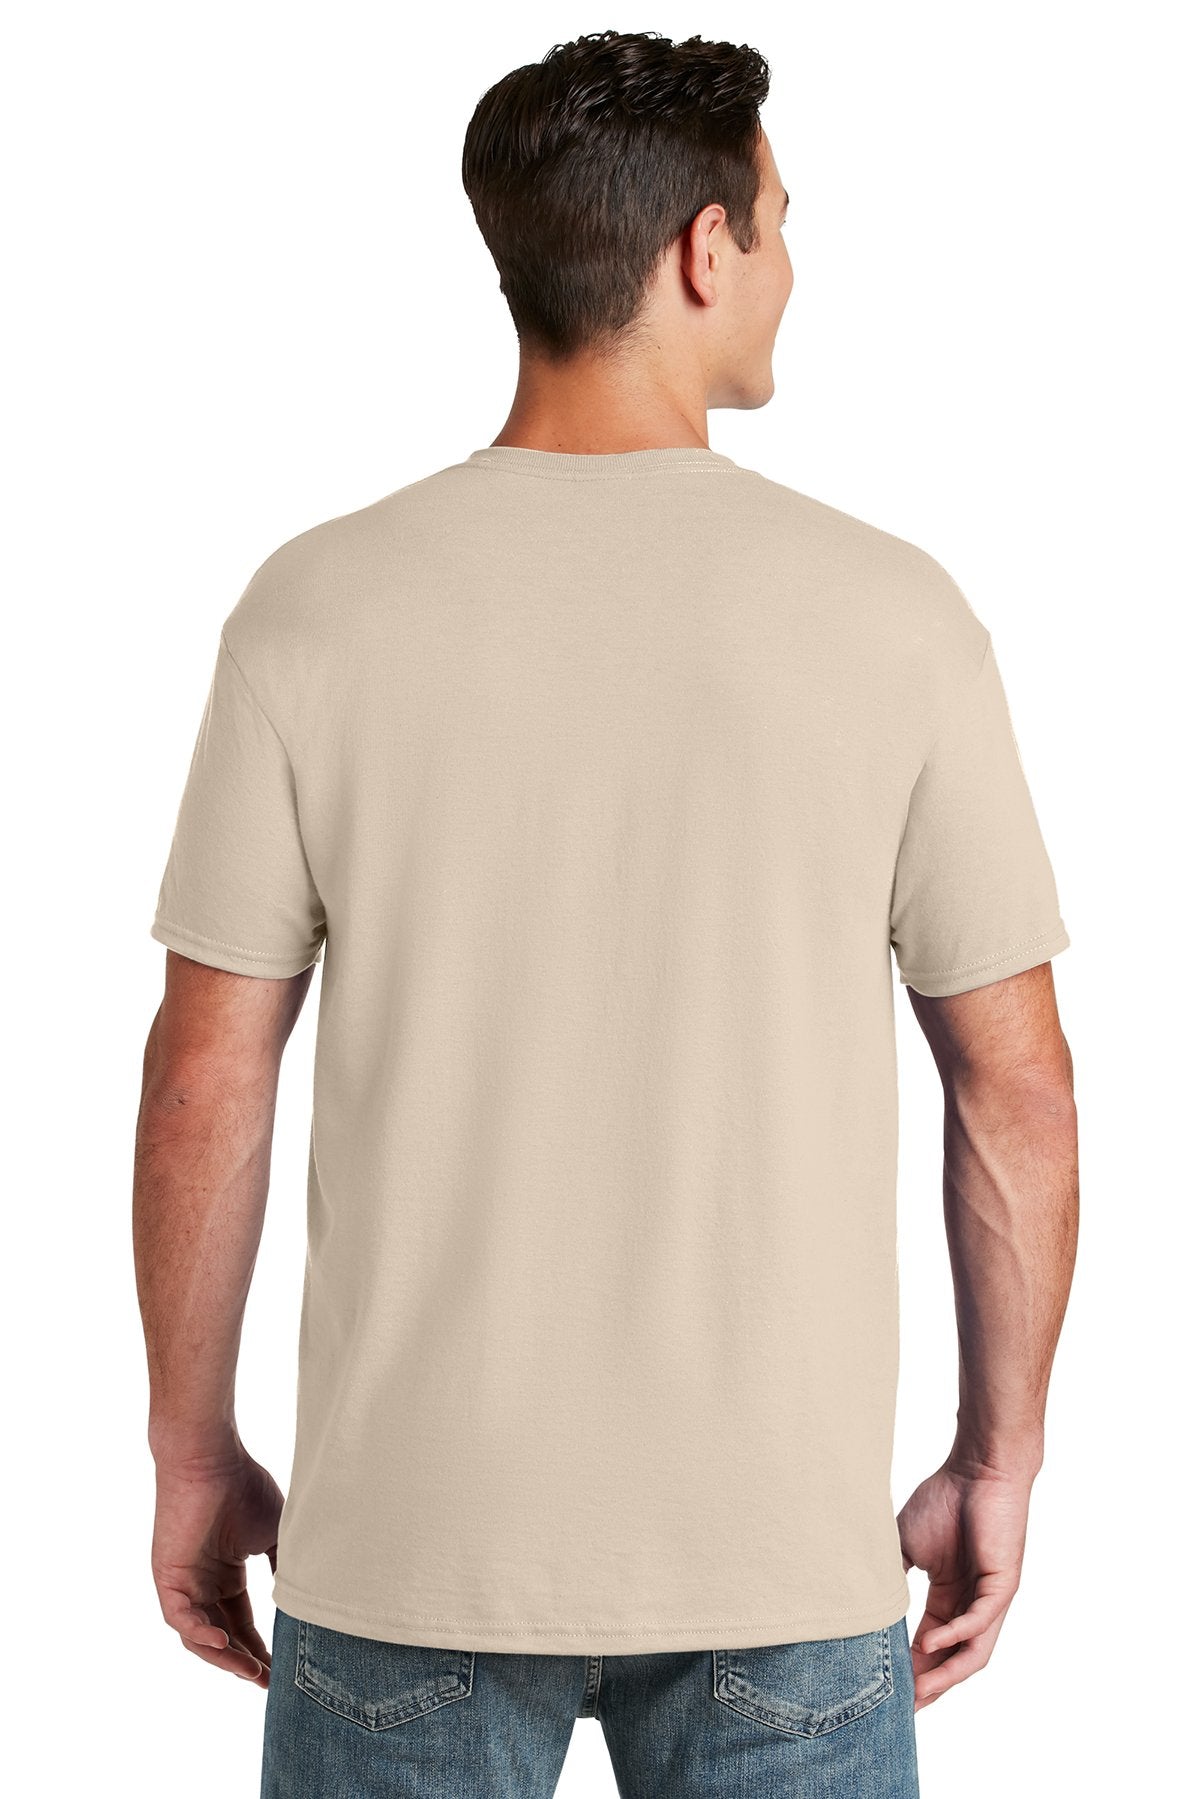 Jerzees Dri-Power Active 50/50 Cotton/Poly T-Shirt 29M Sandstone